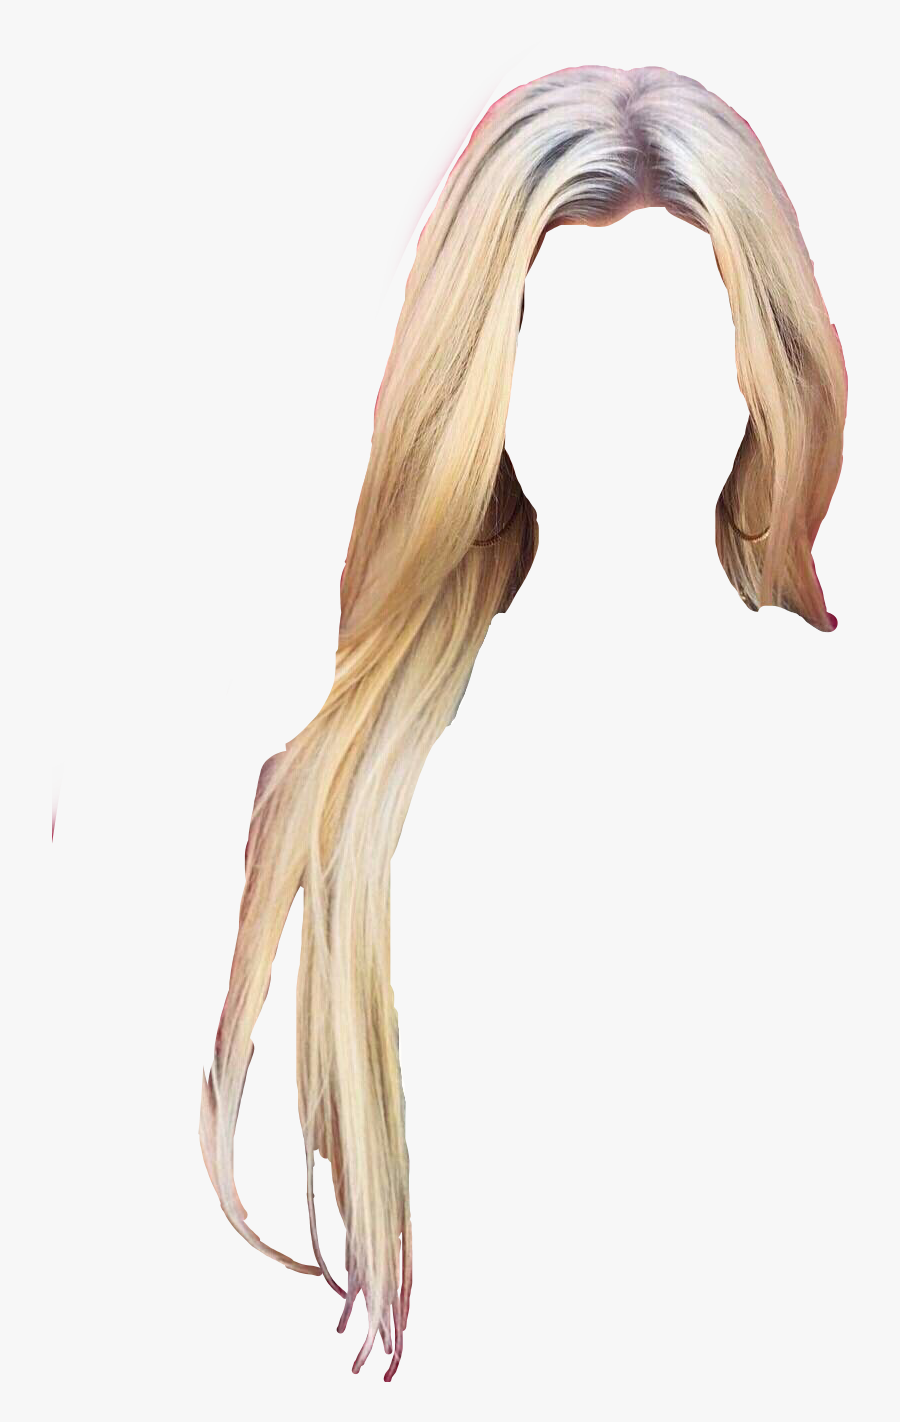 #wig #hair #blondewig #blondehair - Blonde Hair Sticker, Transparent Clipart